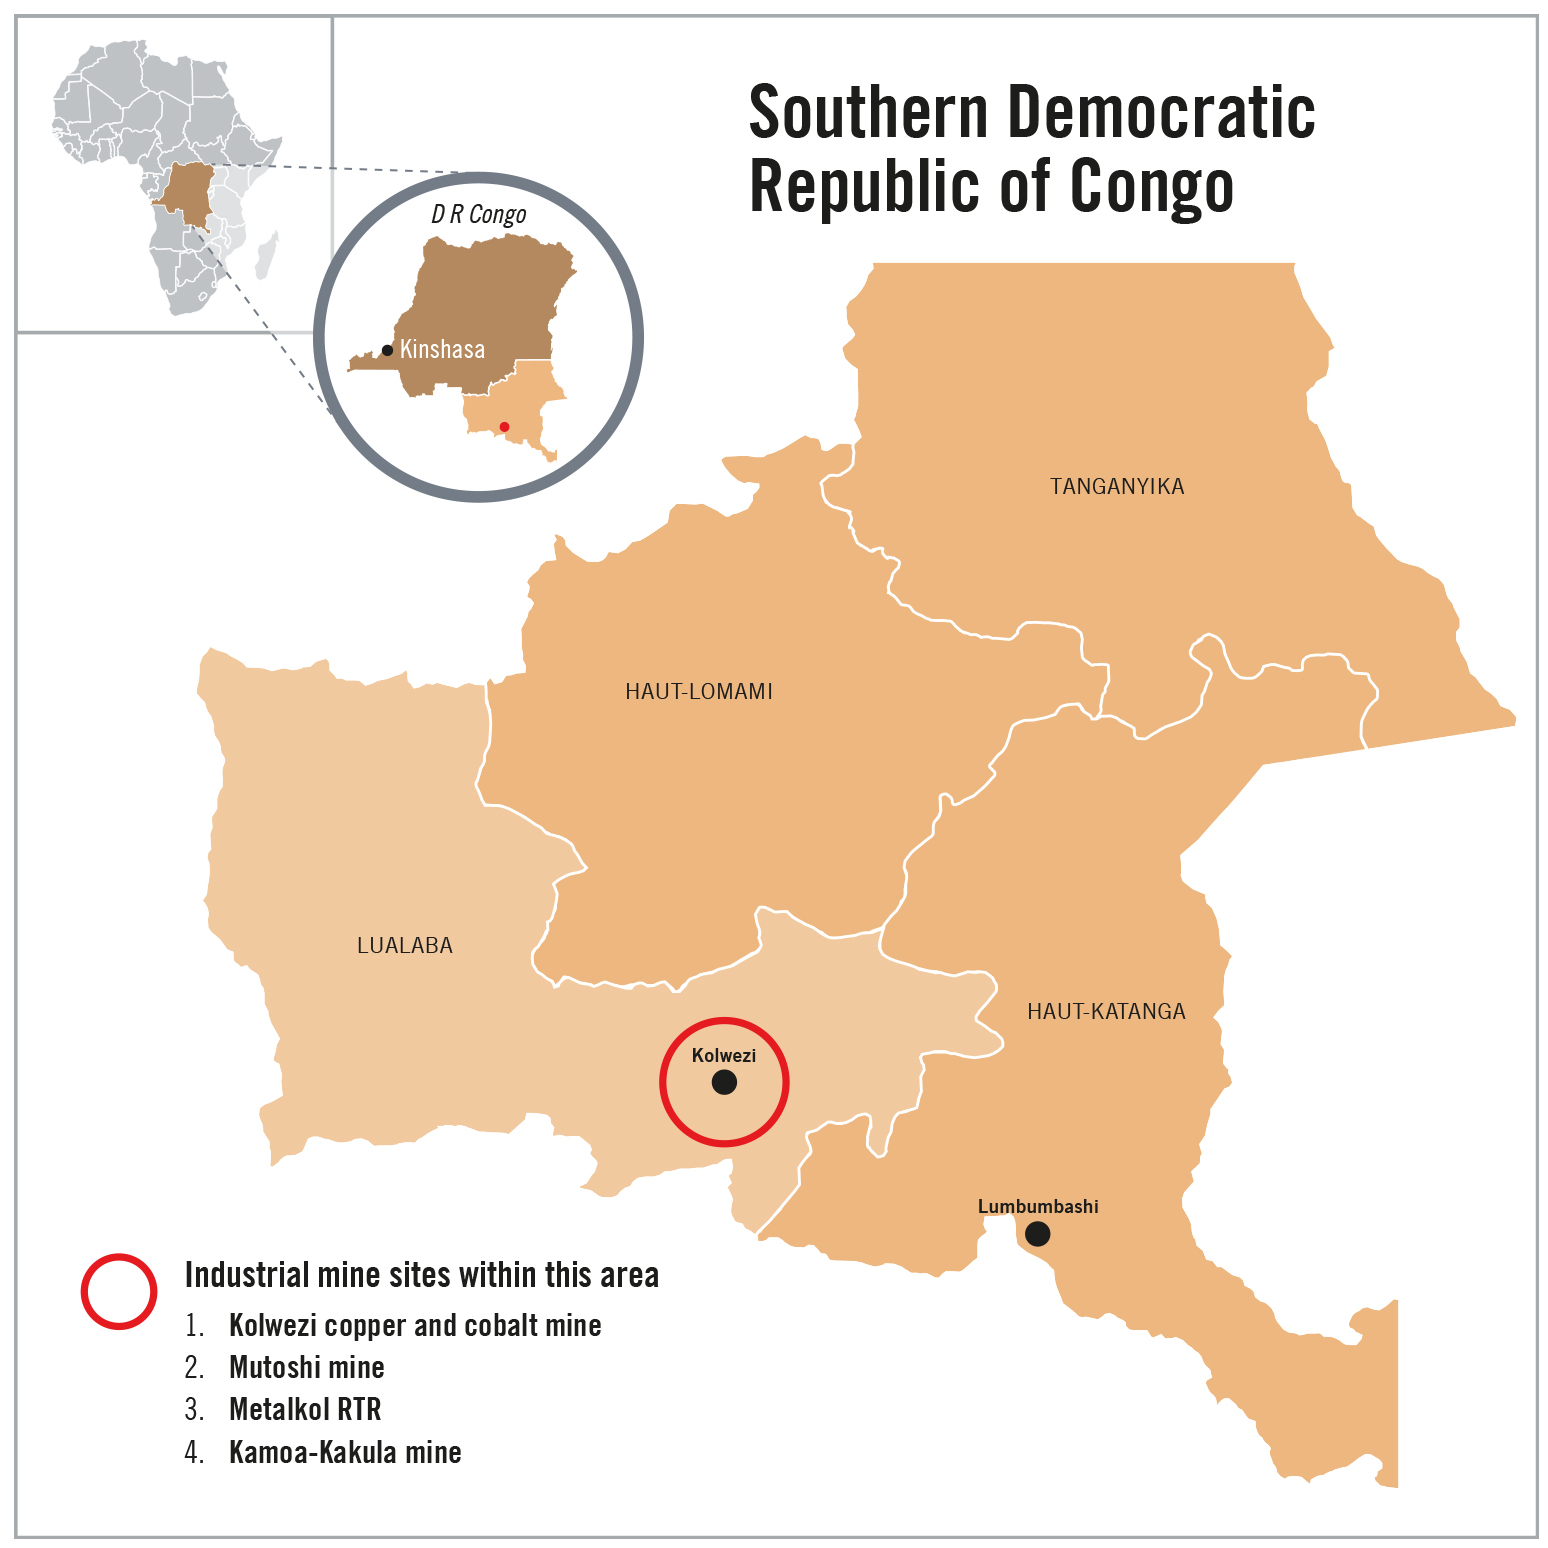 Mapa de la región meridional de República Democrática del Congo. Se identifican cuatro minas industriales en esta zona: 1. Mina de cobre y cobalto de Kolwezi. 2. Mina de Mutoshi. 3. Metalkol RTR. 4. Mina de Kamoa-Kakula.